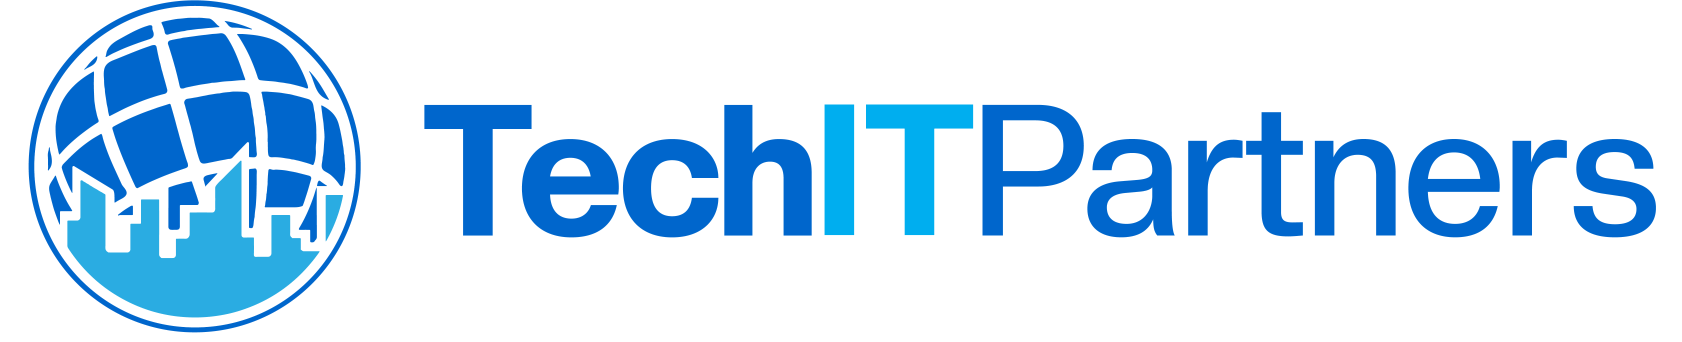 11Tech IT Partners Logo